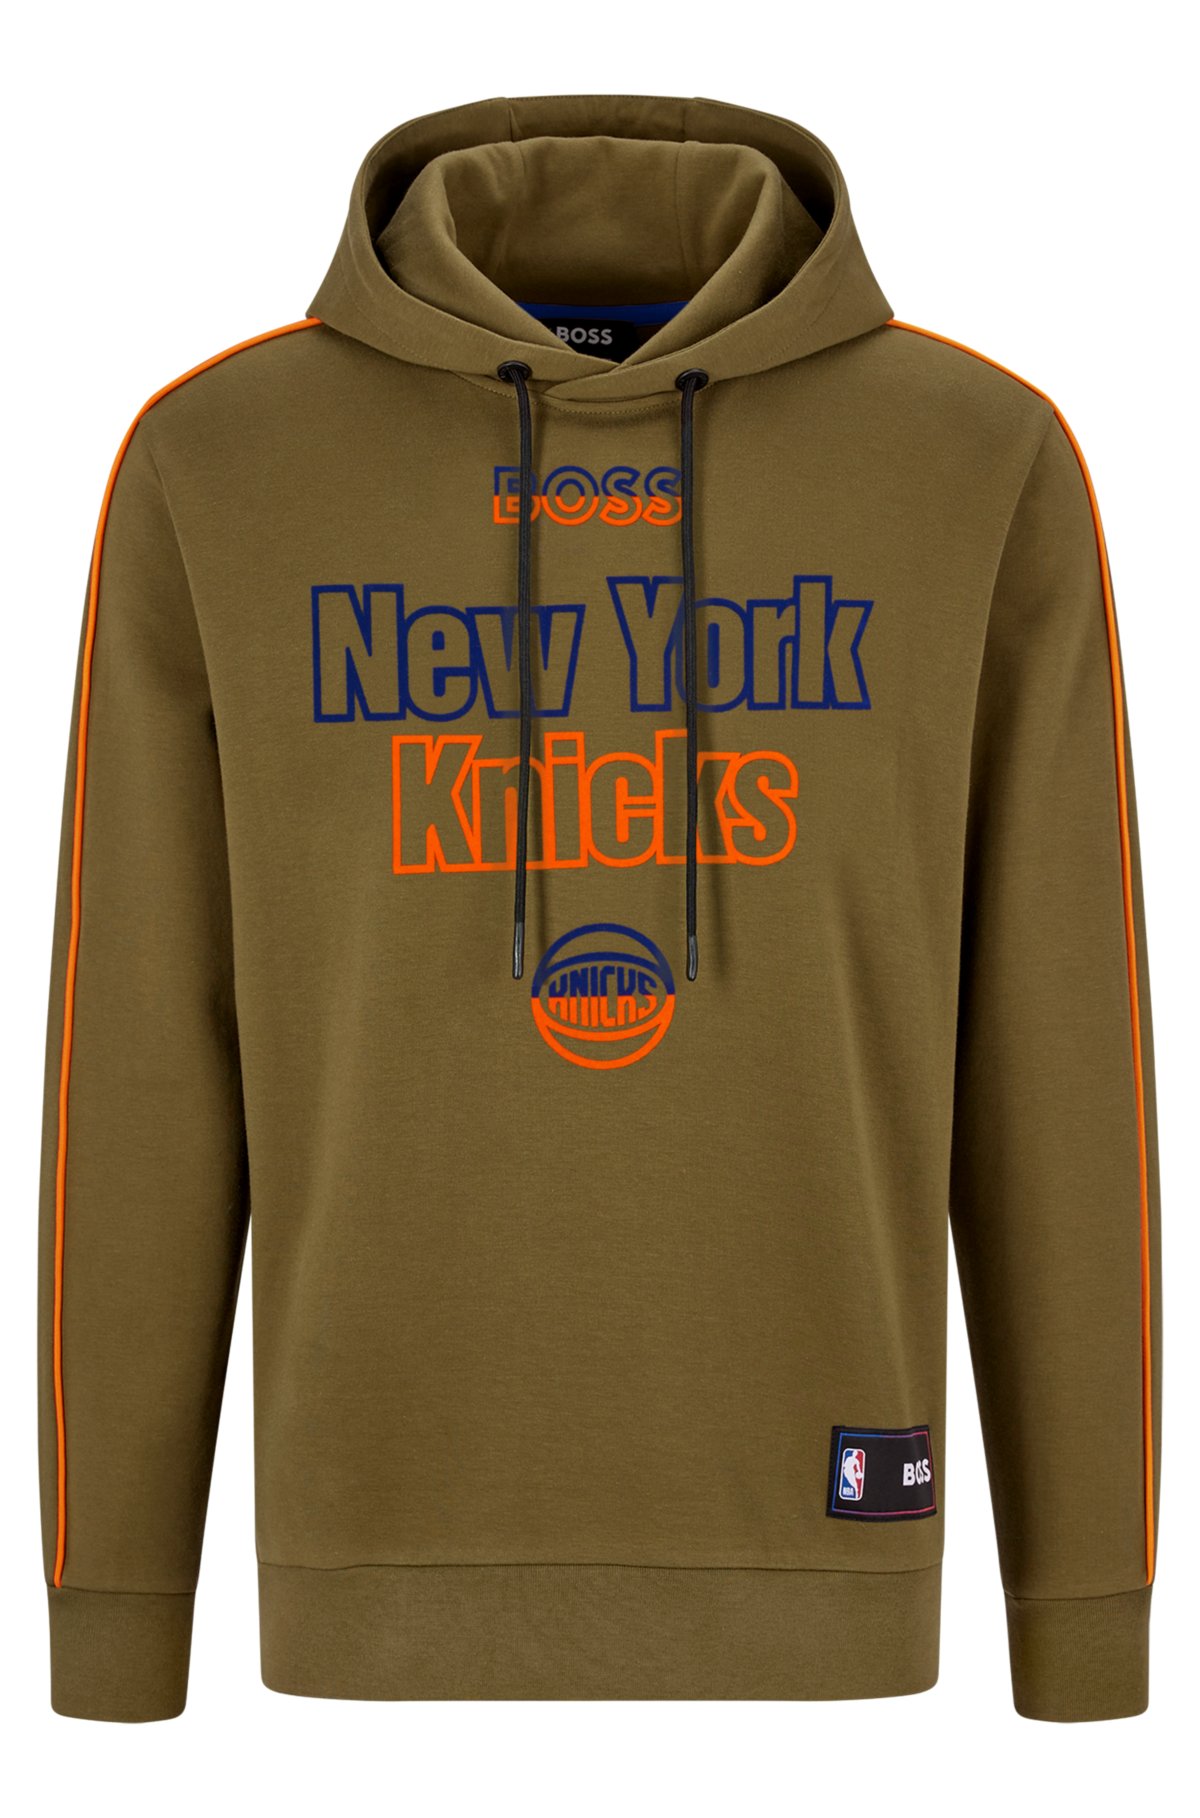 NBA Hoodie, NBA Sweatshirts, NBA Fleece